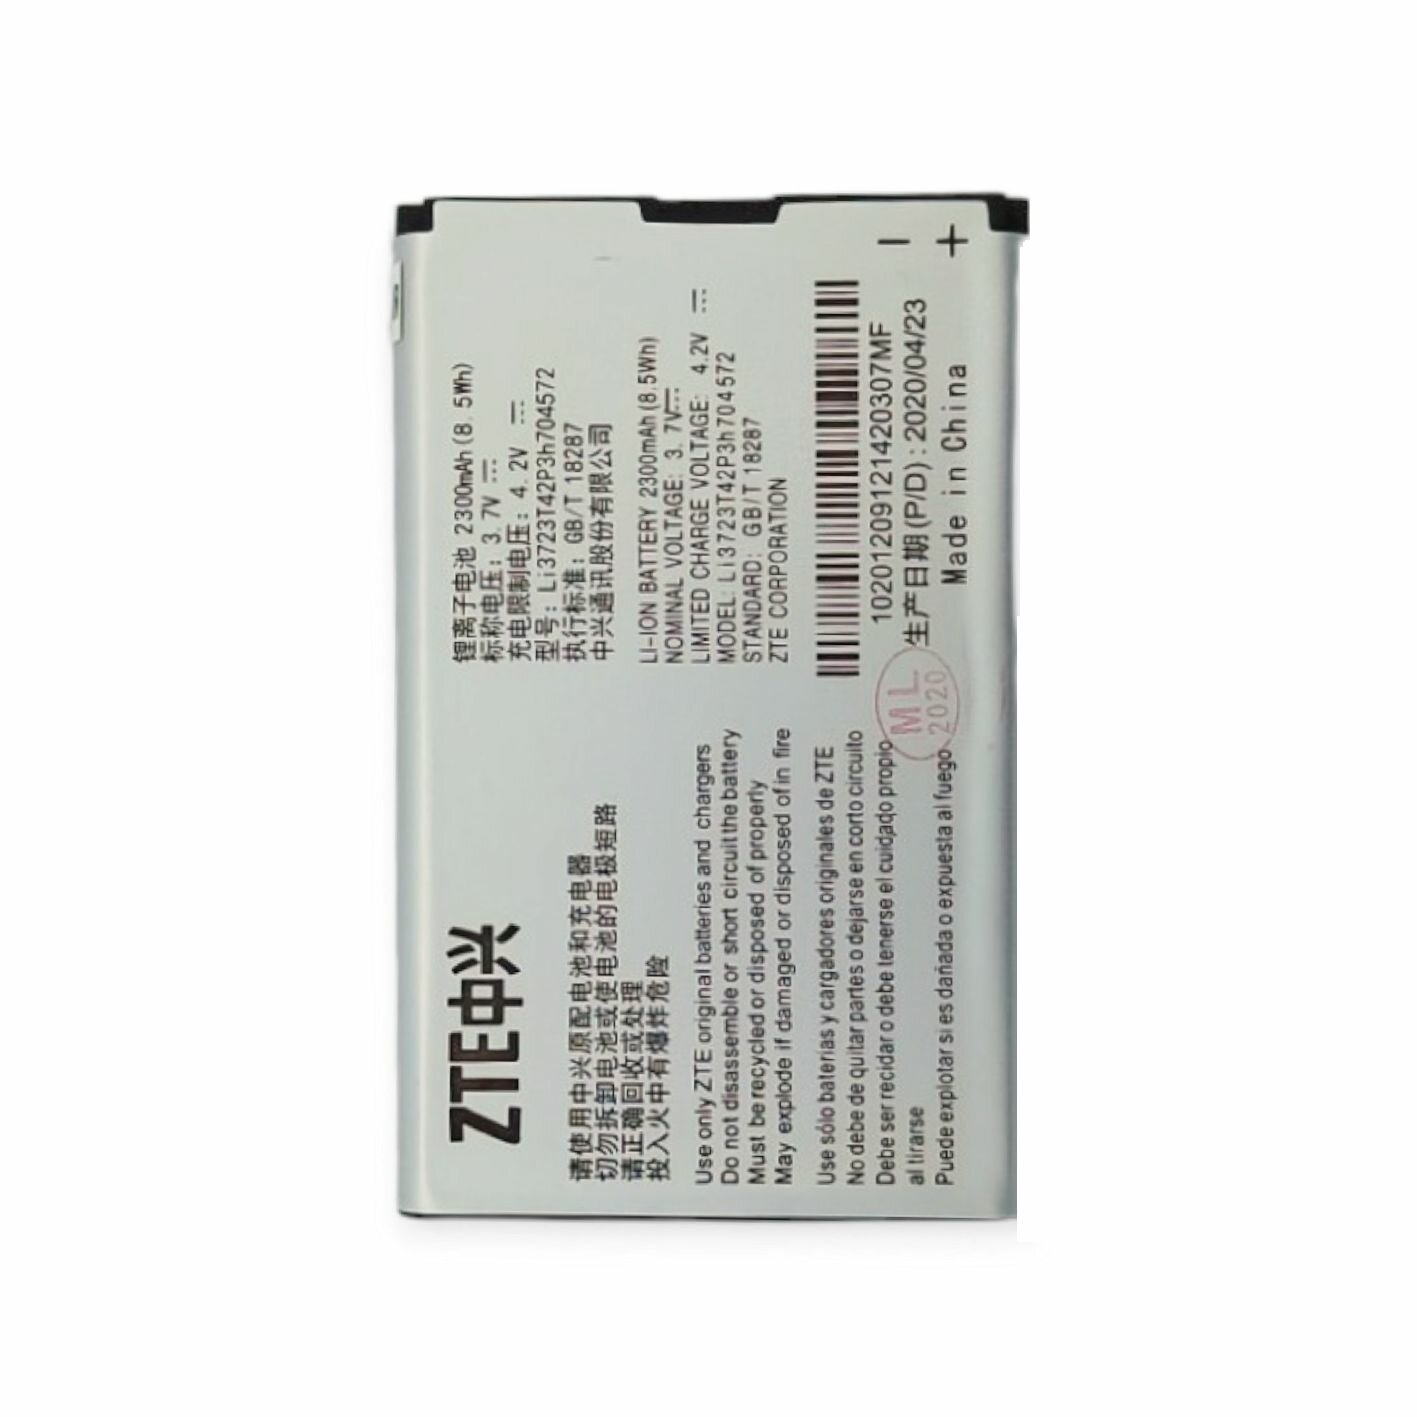 АКБ (аккумулятор) ZTE LI3723T42P3h704572 (для модемов и роутеров Beeline MF90 МТС 831FT МТС 833FT ZTE MF91D) 3.7V 2300mA